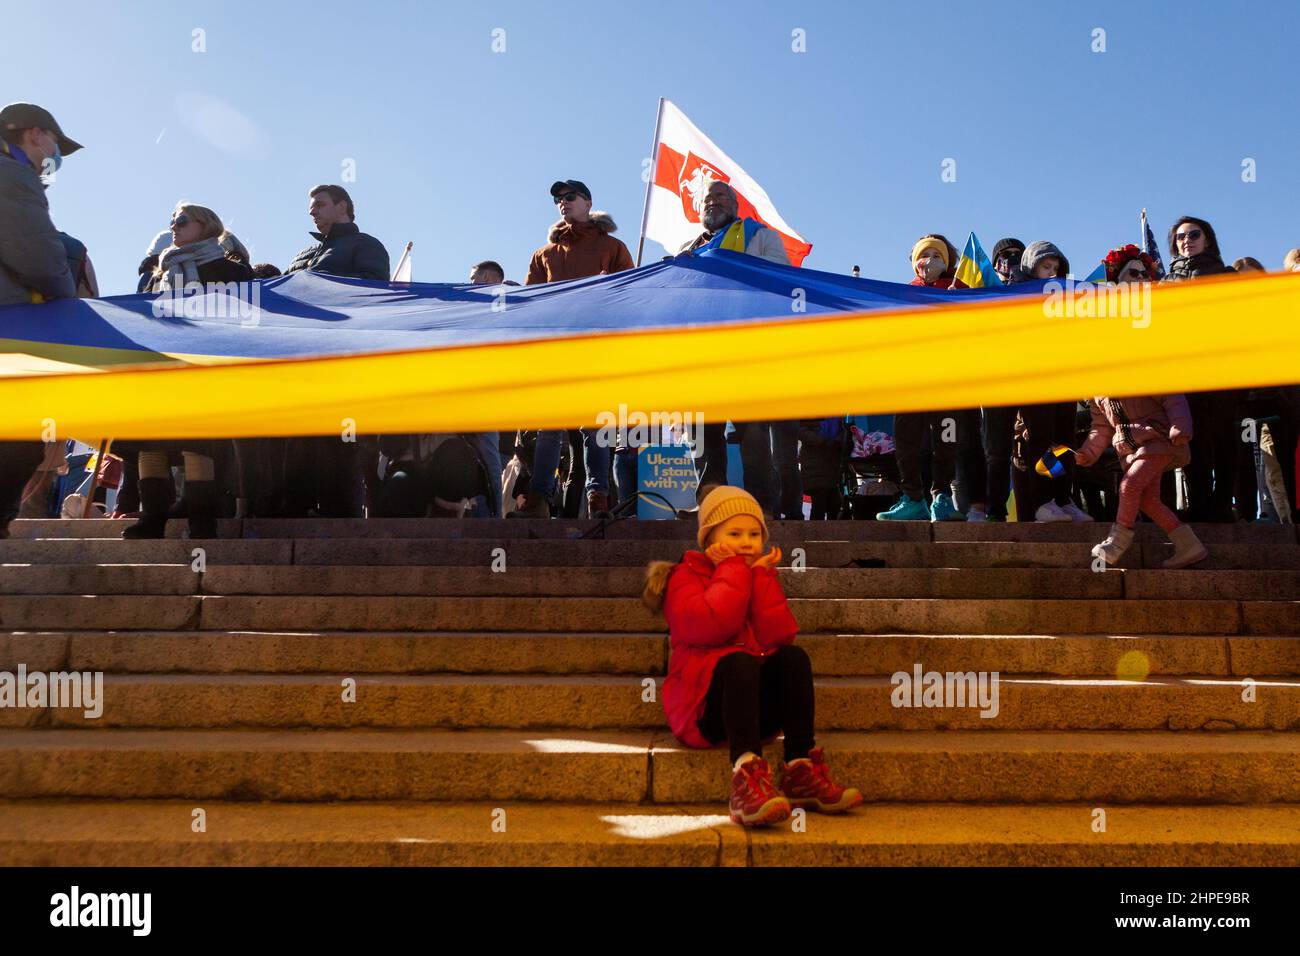 Washington, DC, États-Unis, 20 février 2022. Photo : une jeune fille est assise sous un énorme drapeau lors d'un rassemblement de solidarité pour l'Ukraine. Des milliers de personnes ont assisté à l'événement en faveur de l'indépendance, de la souveraineté et de l'intégrité territoriale de l'Ukraine, alors que le président russe Vladimir Poutine menace l'invasion avec des troupes mobilisées à la frontière. L'événement a été parrainé par Razom, une organisation ukrainienne de plaidoyer, et a inclus une vigile pour les cent Heavenly / Nebesna sotnia (ceux tués pendant la révolution de la dignité de 2014), ainsi qu'une marche à la Maison Blanche. Crédit : Allison Bailey / Alamy Live News Banque D'Images